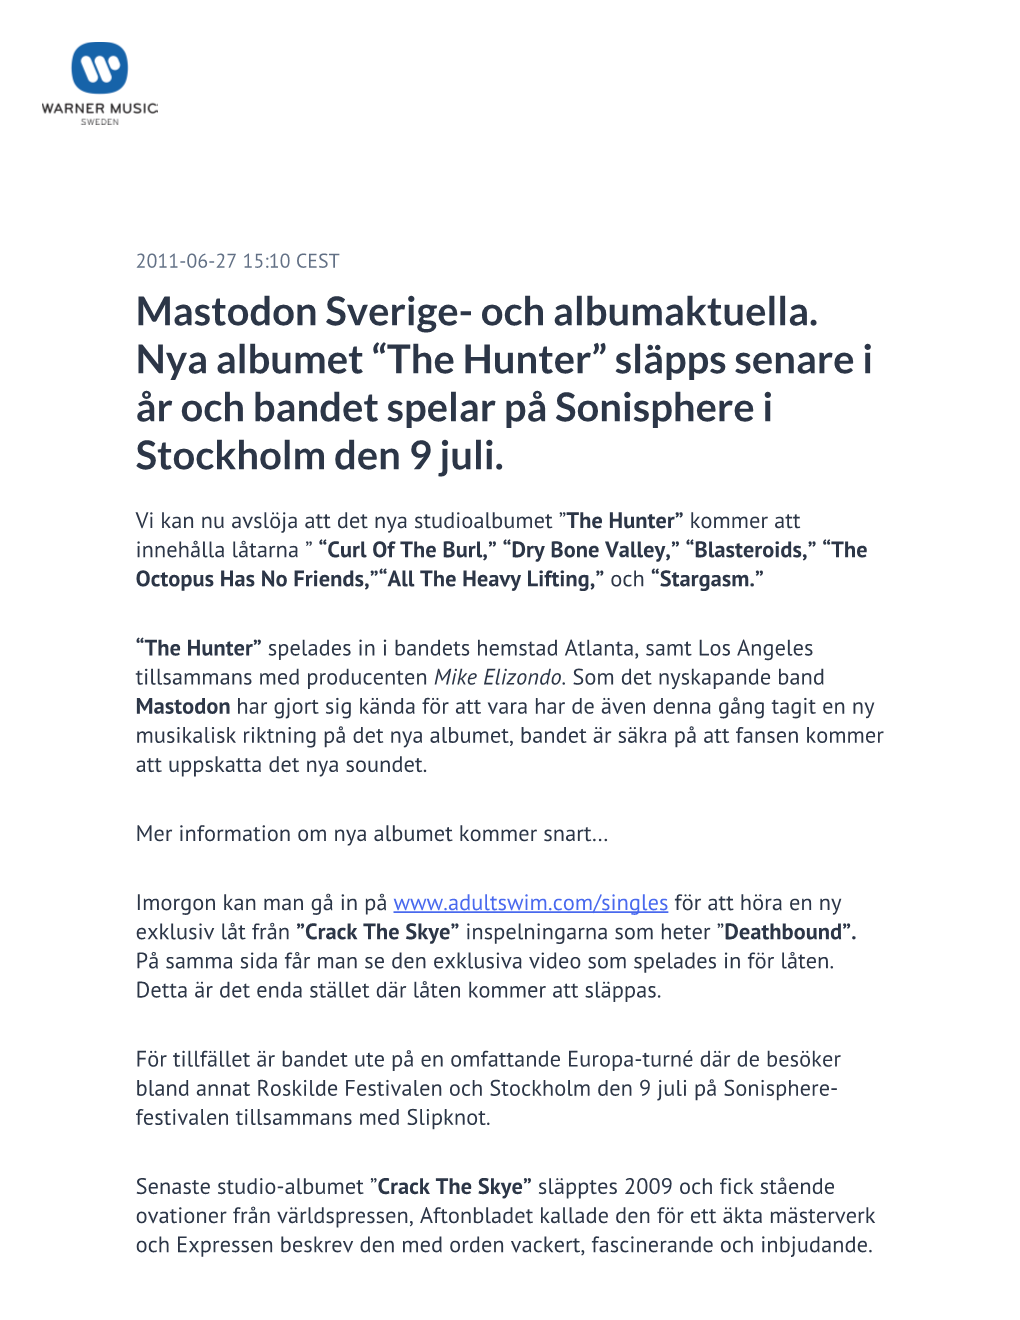 Mastodon Sverige- Och Albumaktuella. Nya Albumet “The Hunter” Släpps Senare I År Och Bandet Spelar På Sonisphere I Stockholm Den 9 Juli